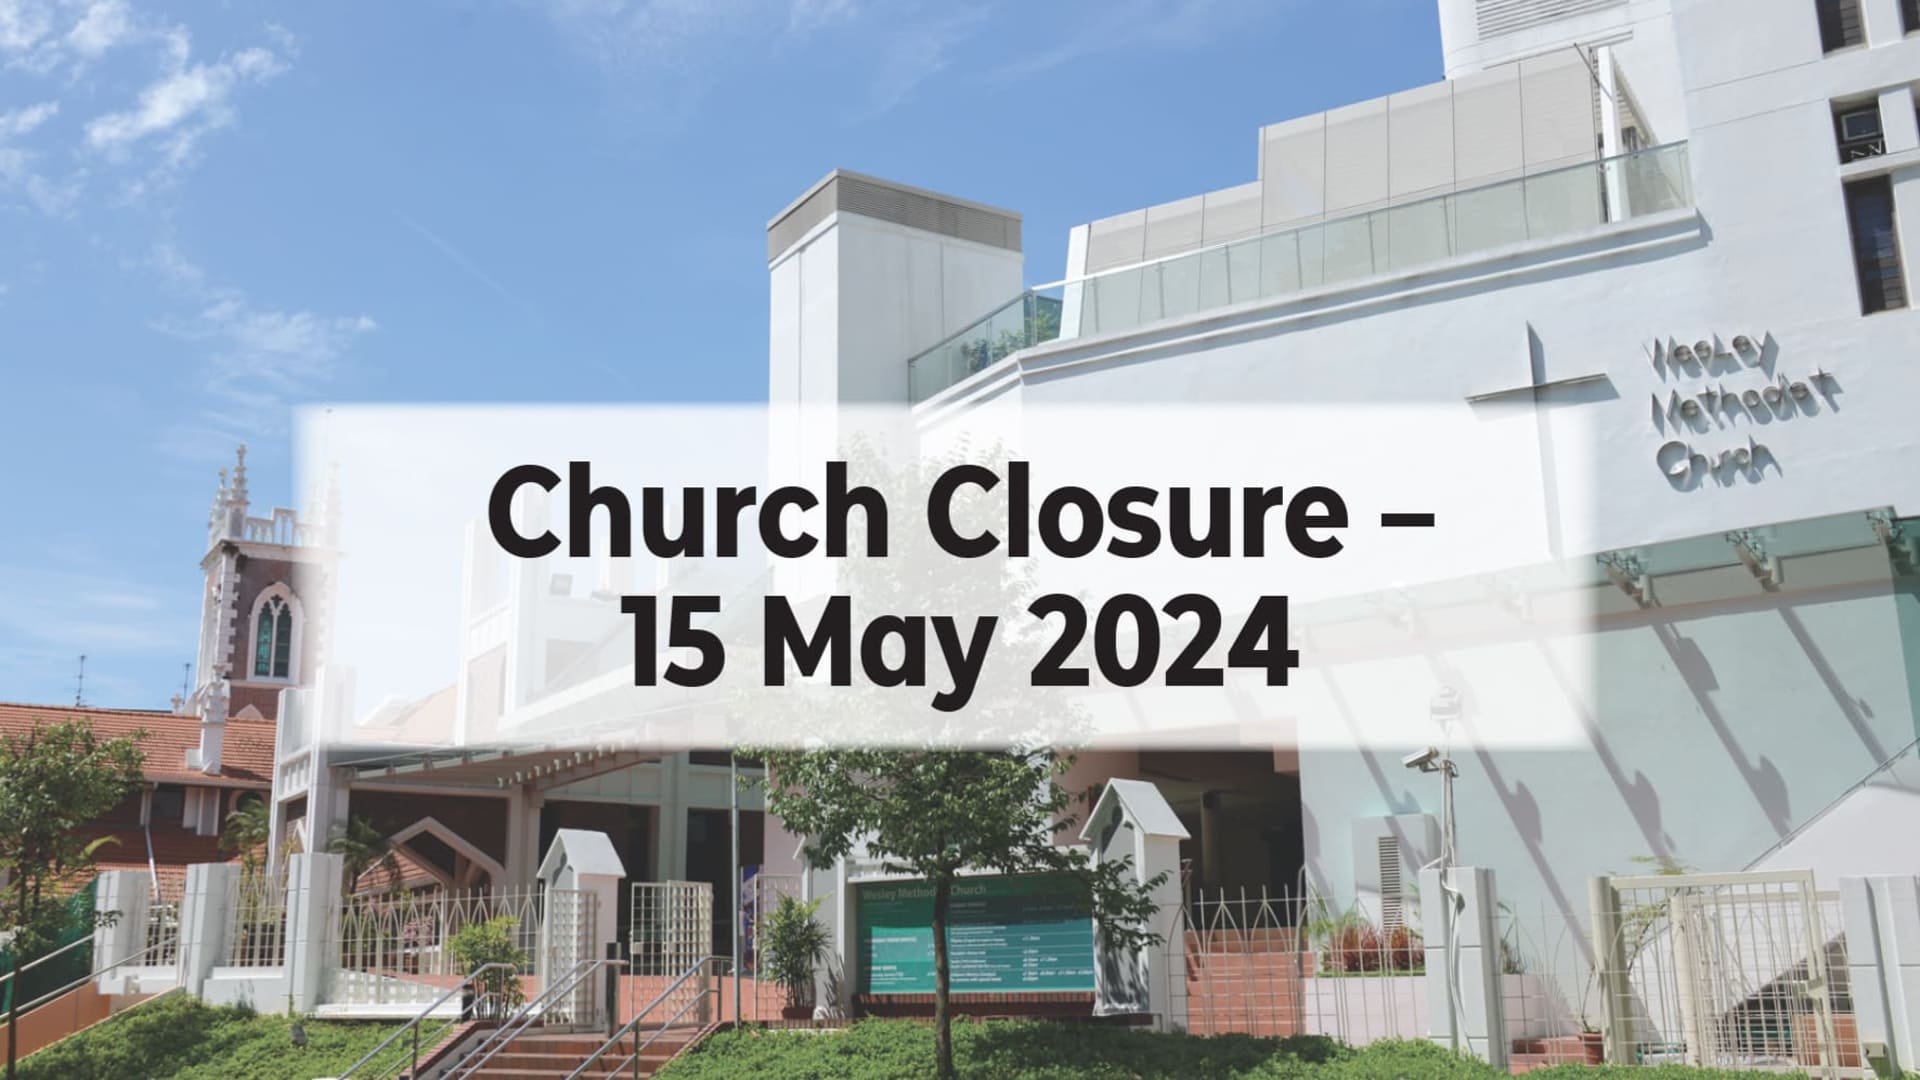 Church Closure - 15 May 2024